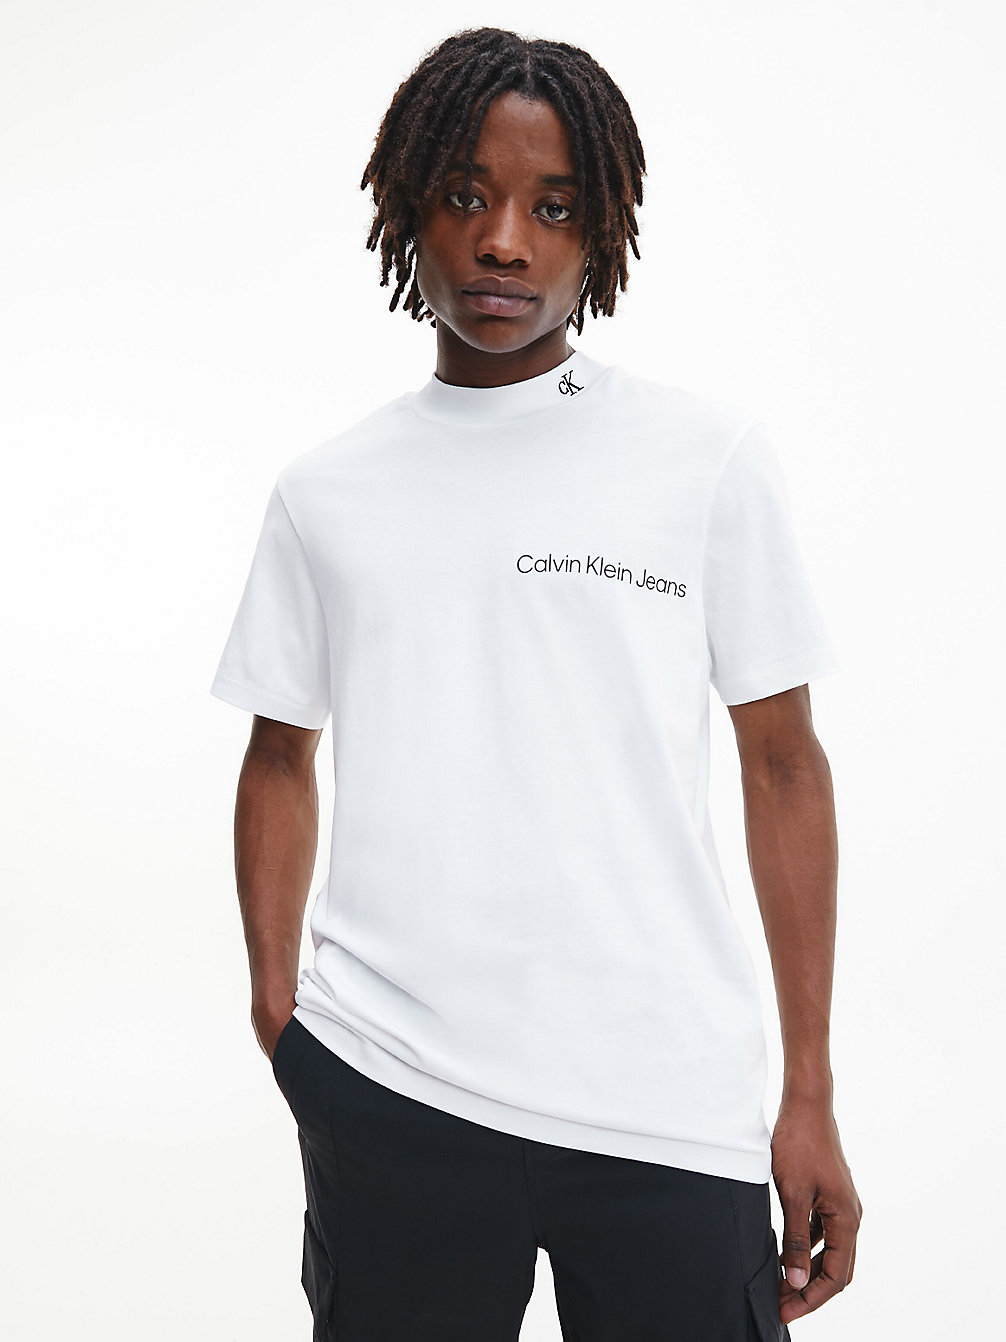 BRIGHT WHITE > Relaxtes T-Shirt Aus Bio-Baumwolle > undefined Herren - Calvin Klein